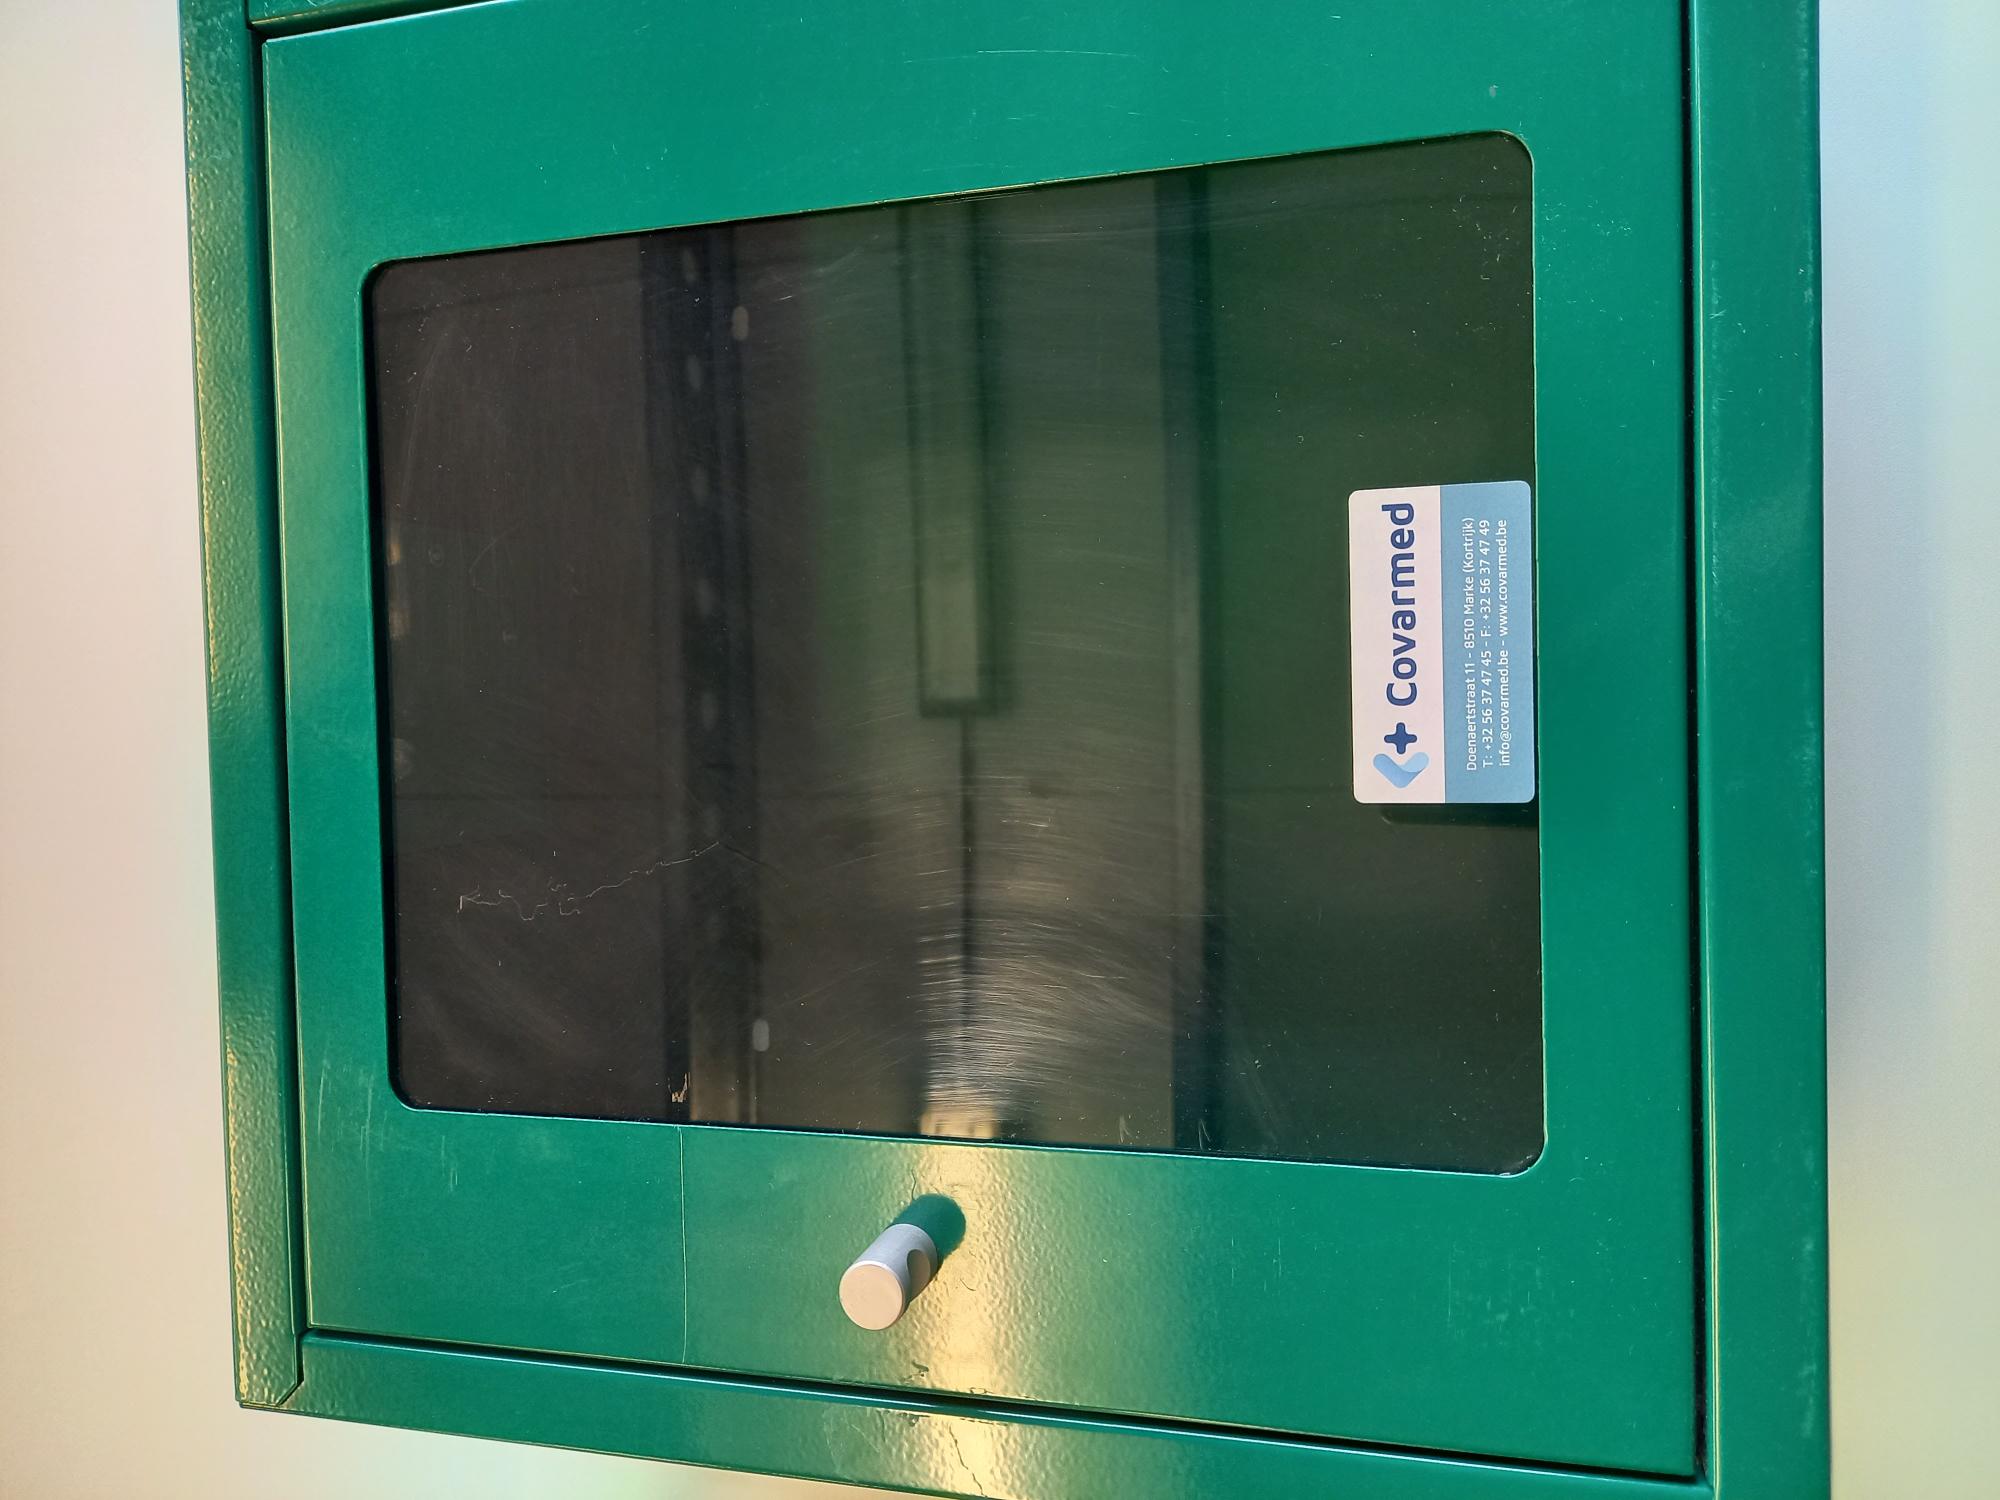 Metalen AED kast met lichte gebruikssporen